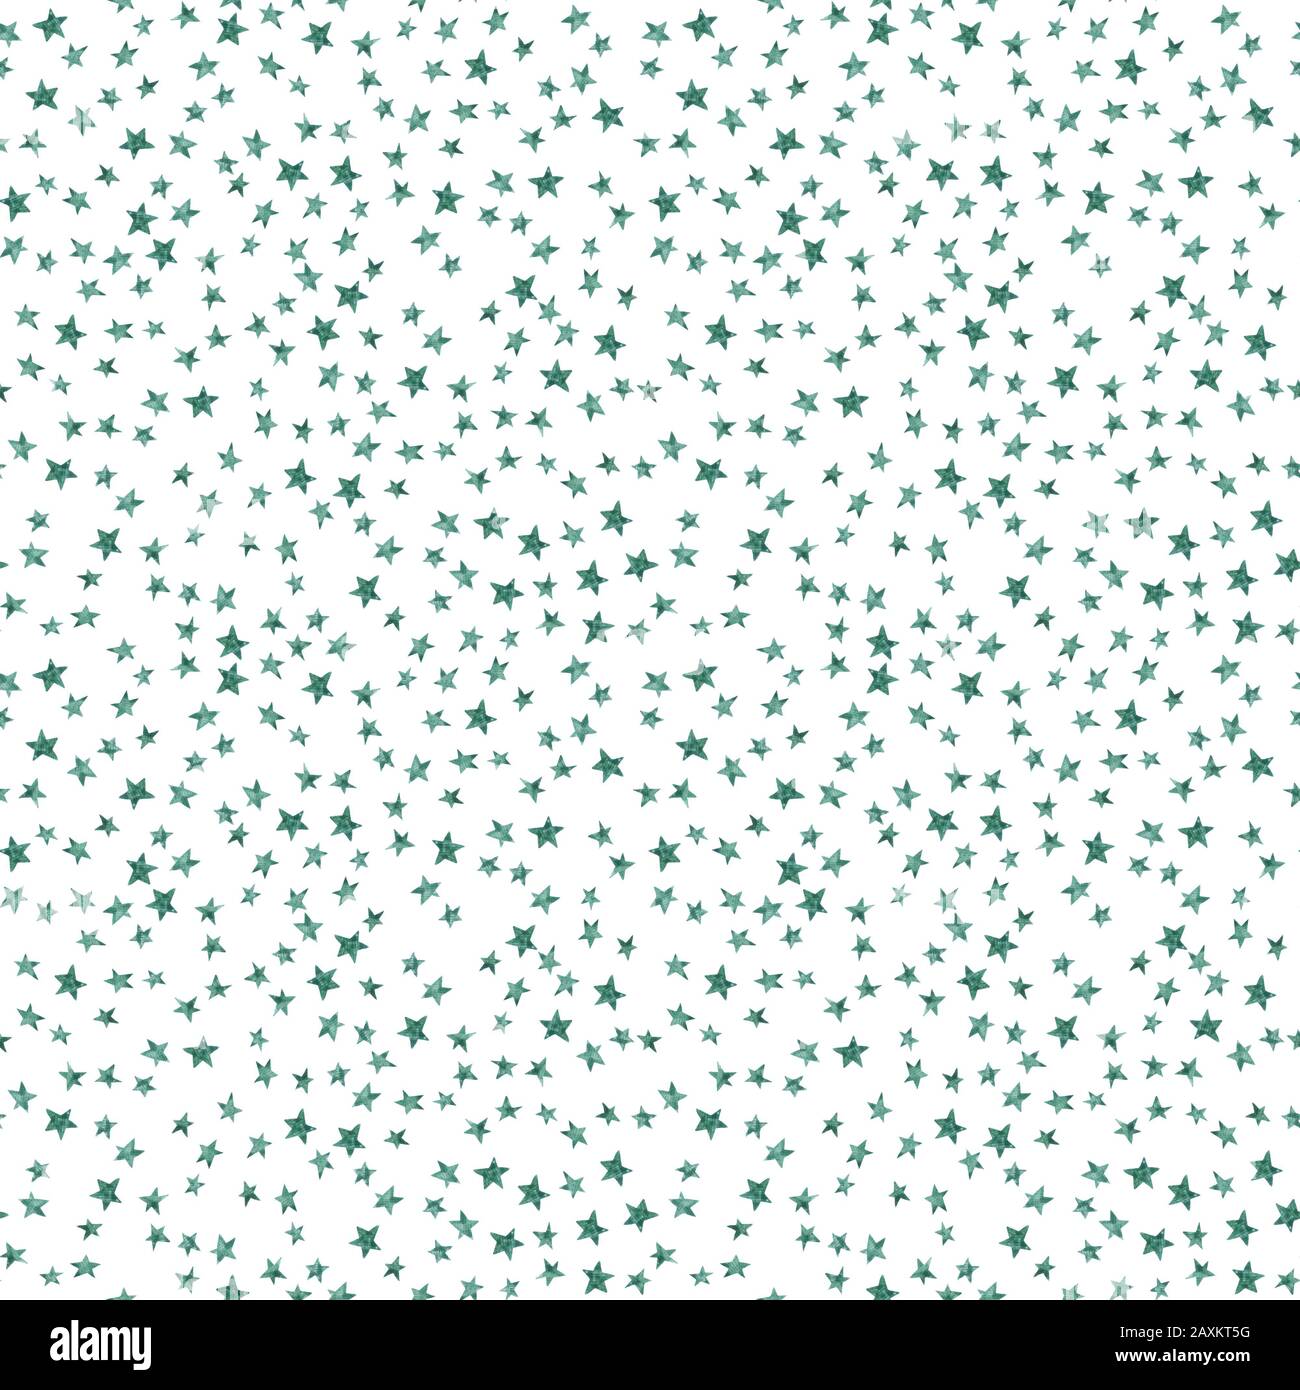 Cielo stellato seamless pattern con semplici stelle su sfondo bianco. Acquerello doodle illustrazione. Colore dell'acqua star modello ripetitivo. Le costellazioni Foto Stock